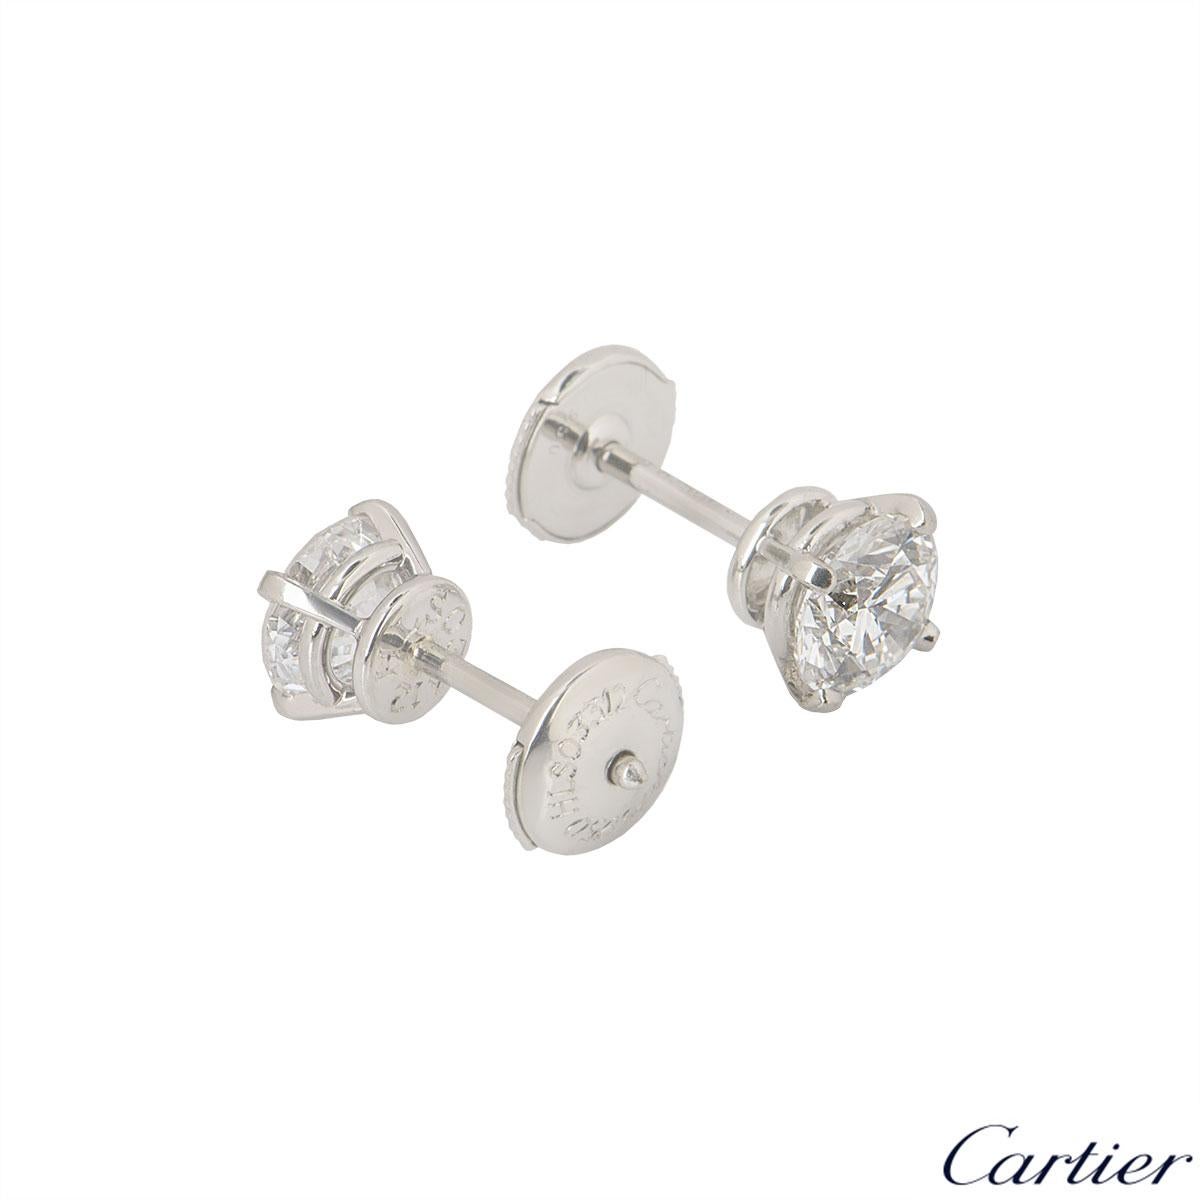 cartier 1895 earrings price